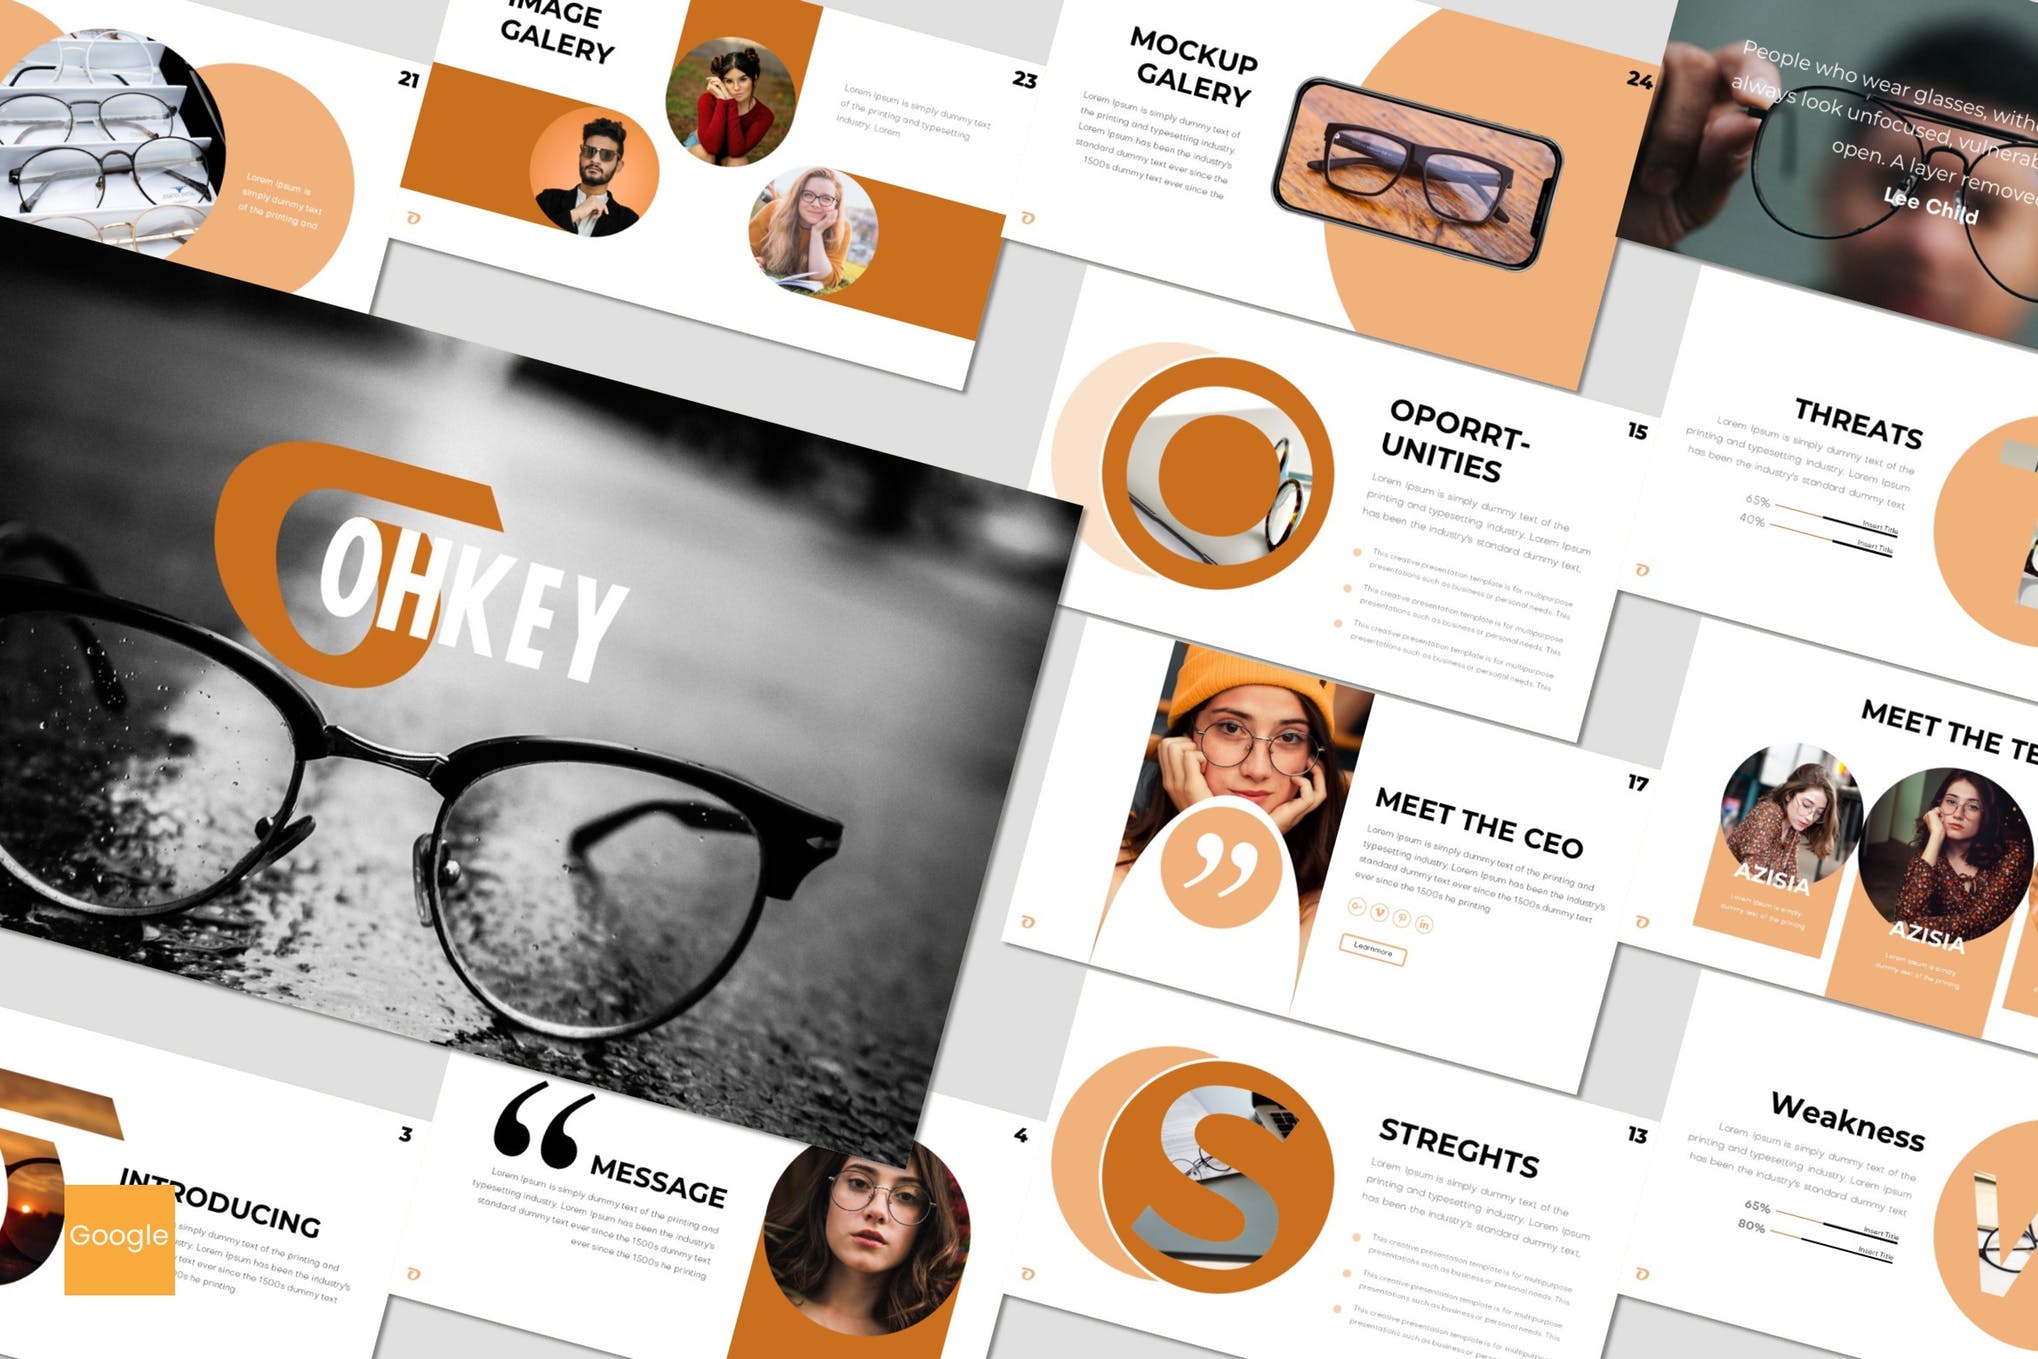 极简商业项目策划个人简历幻灯片模板 Ohkey – Powerpoint, Keynote, Google Slides Templates插图2